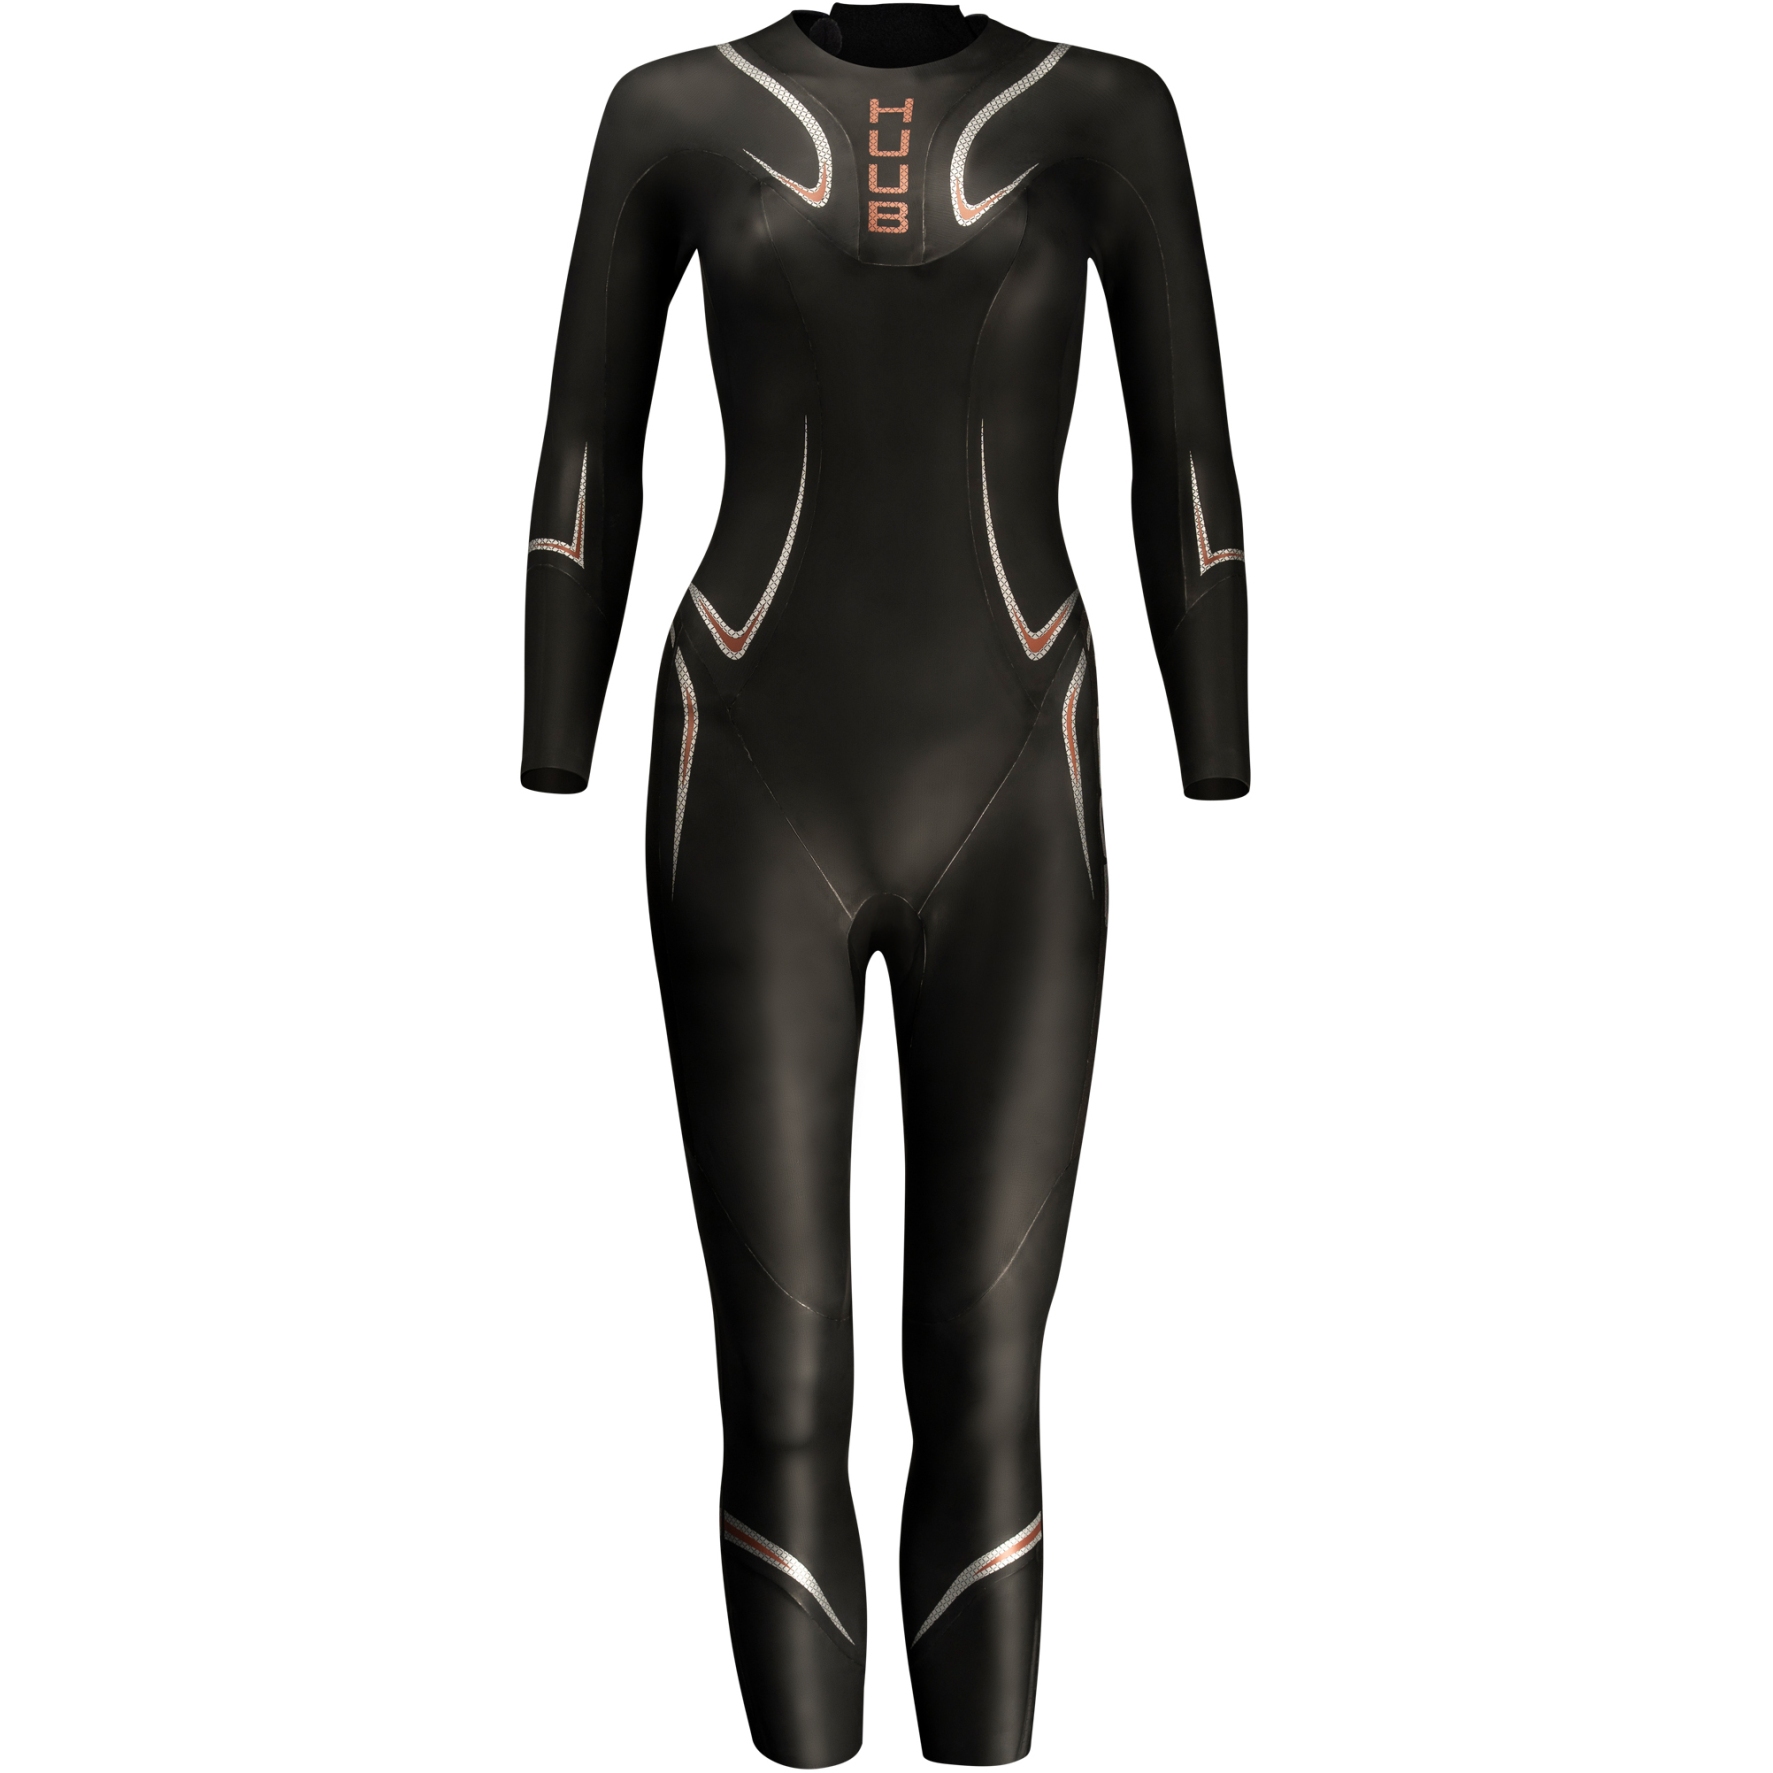 Produktbild von HUUB Design TC Performance 3:3 Wetsuit Damen - schwarz/orange